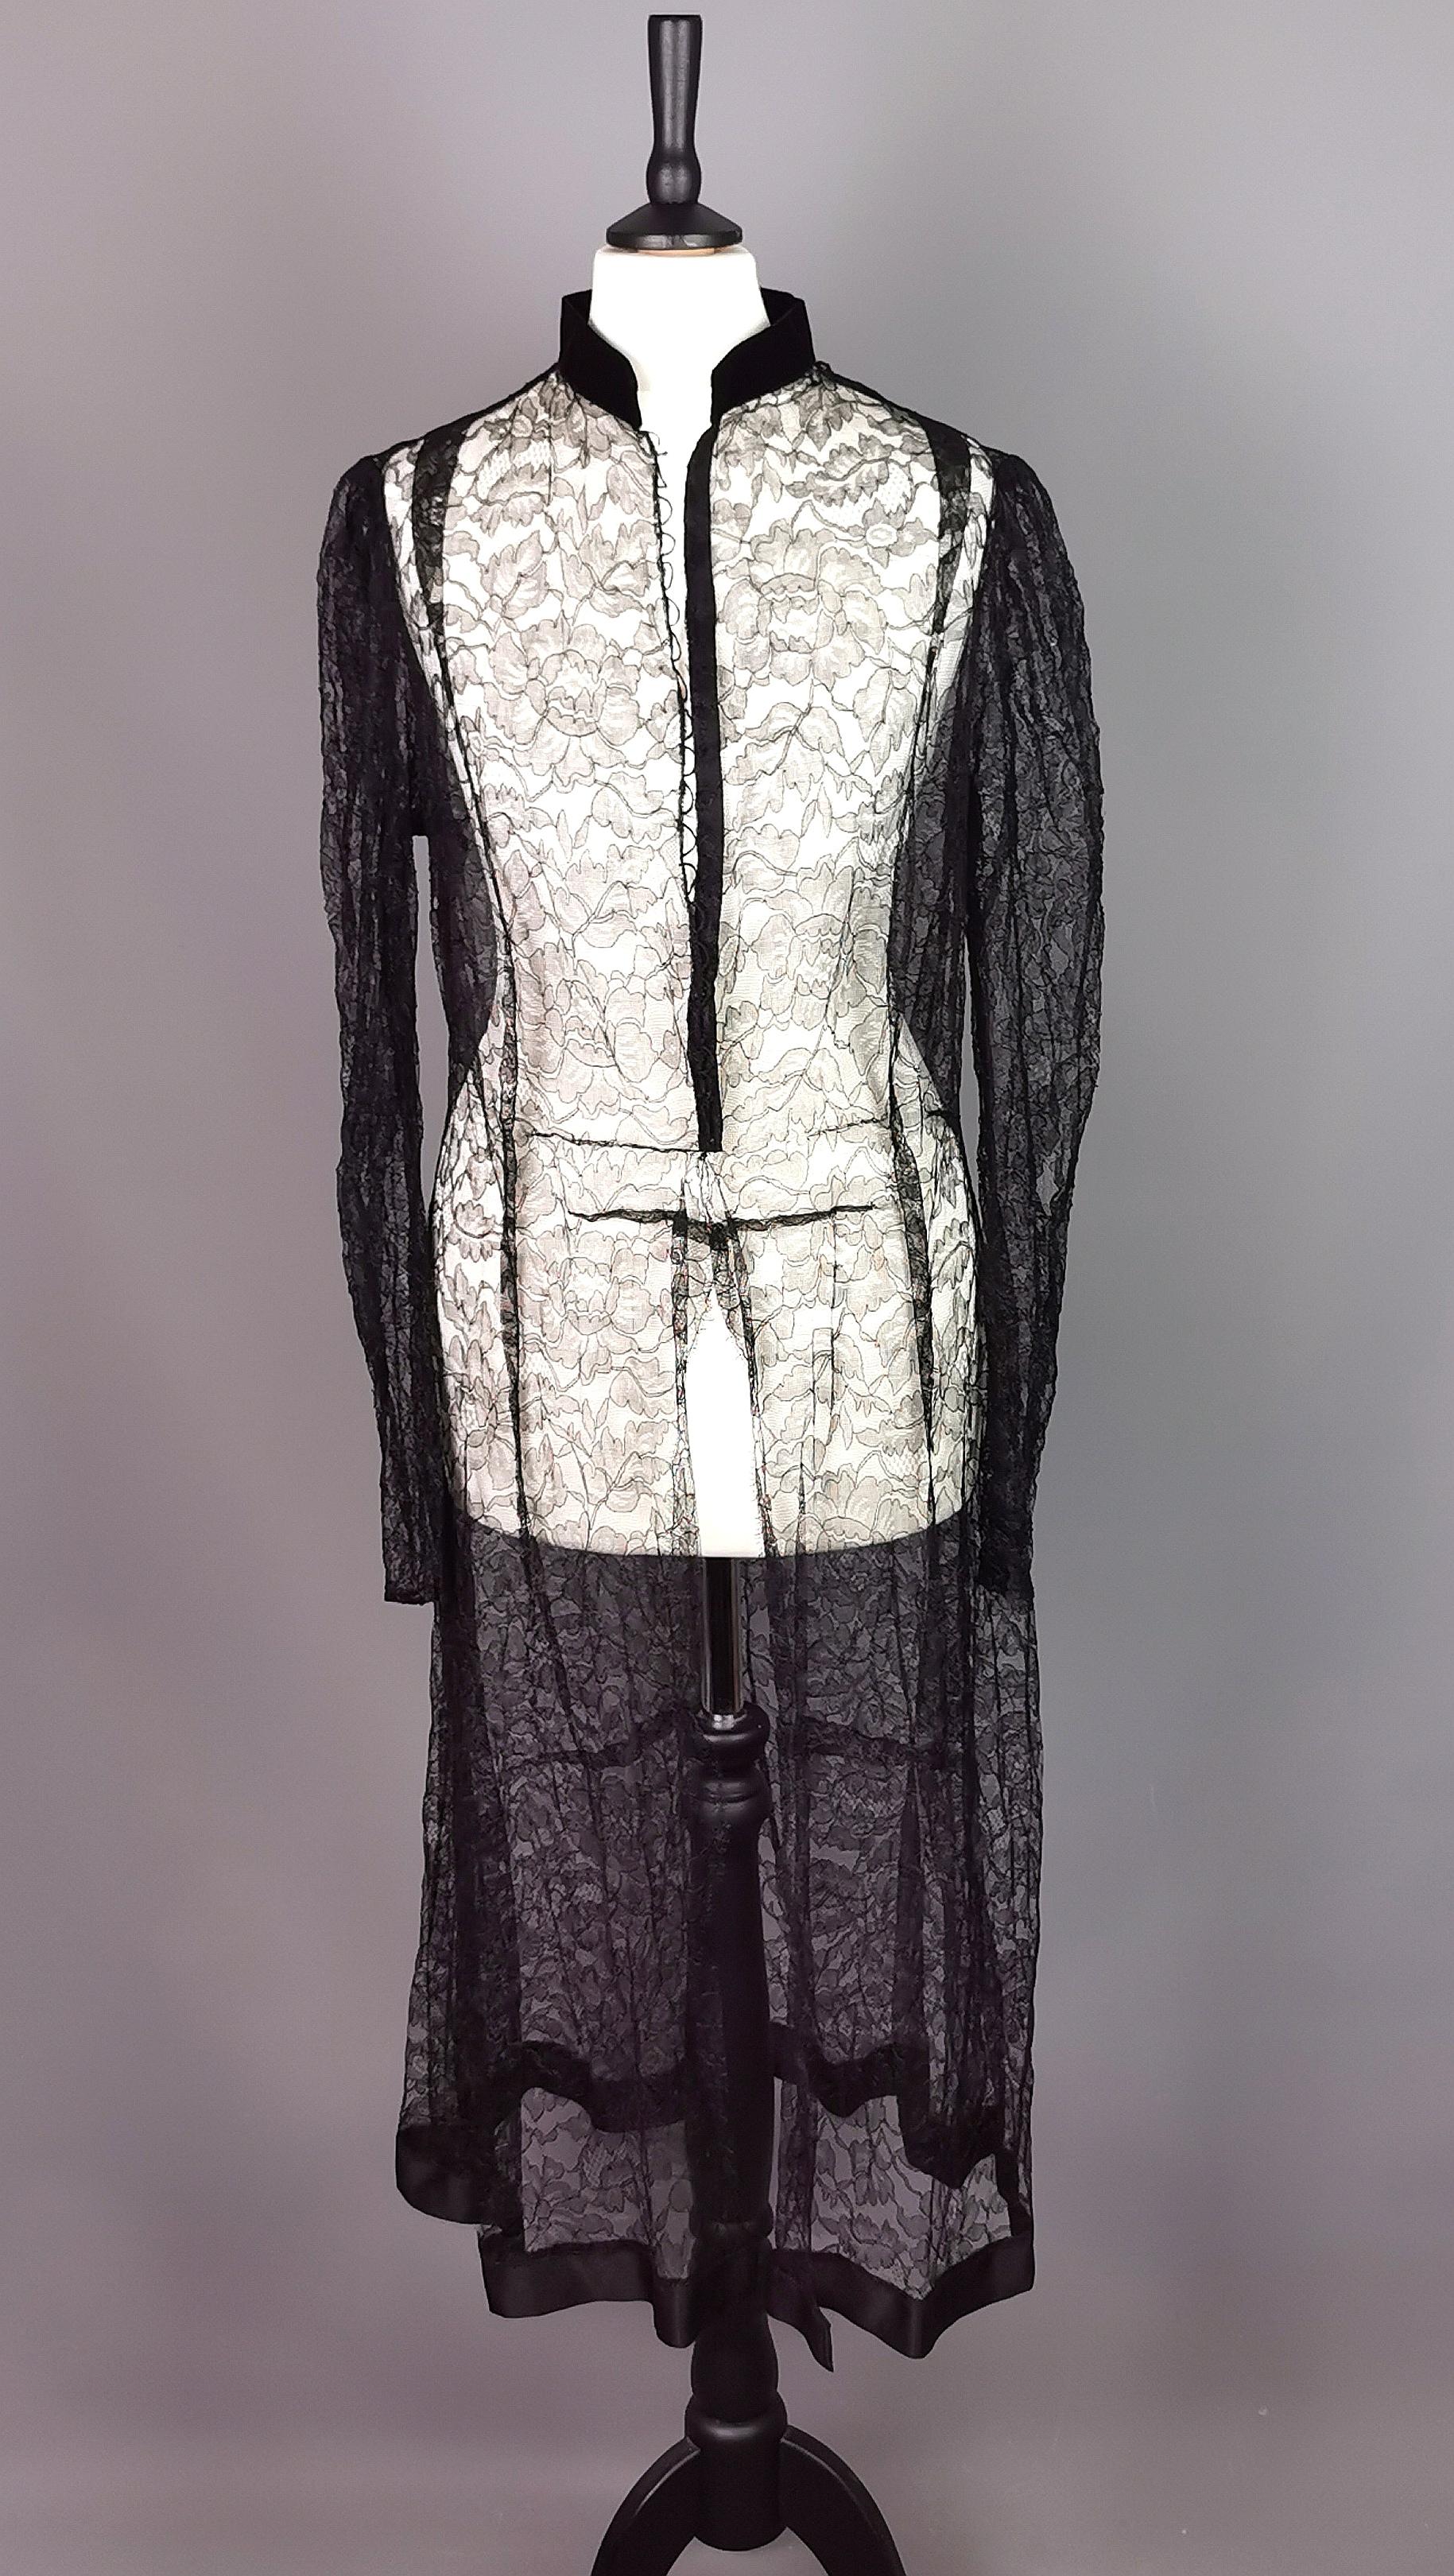 Eine wunderschöne und ungewöhnliche Vintage 1930's Black Lace Jacke.

Langärmelige Jacke aus zarter schwarzer Chantilly-Spitze mit einem mit Samt gefütterten Mandarinenkragen und einem mit Satin besetzten Saum.

Es hat einen leicht gewellten Saum